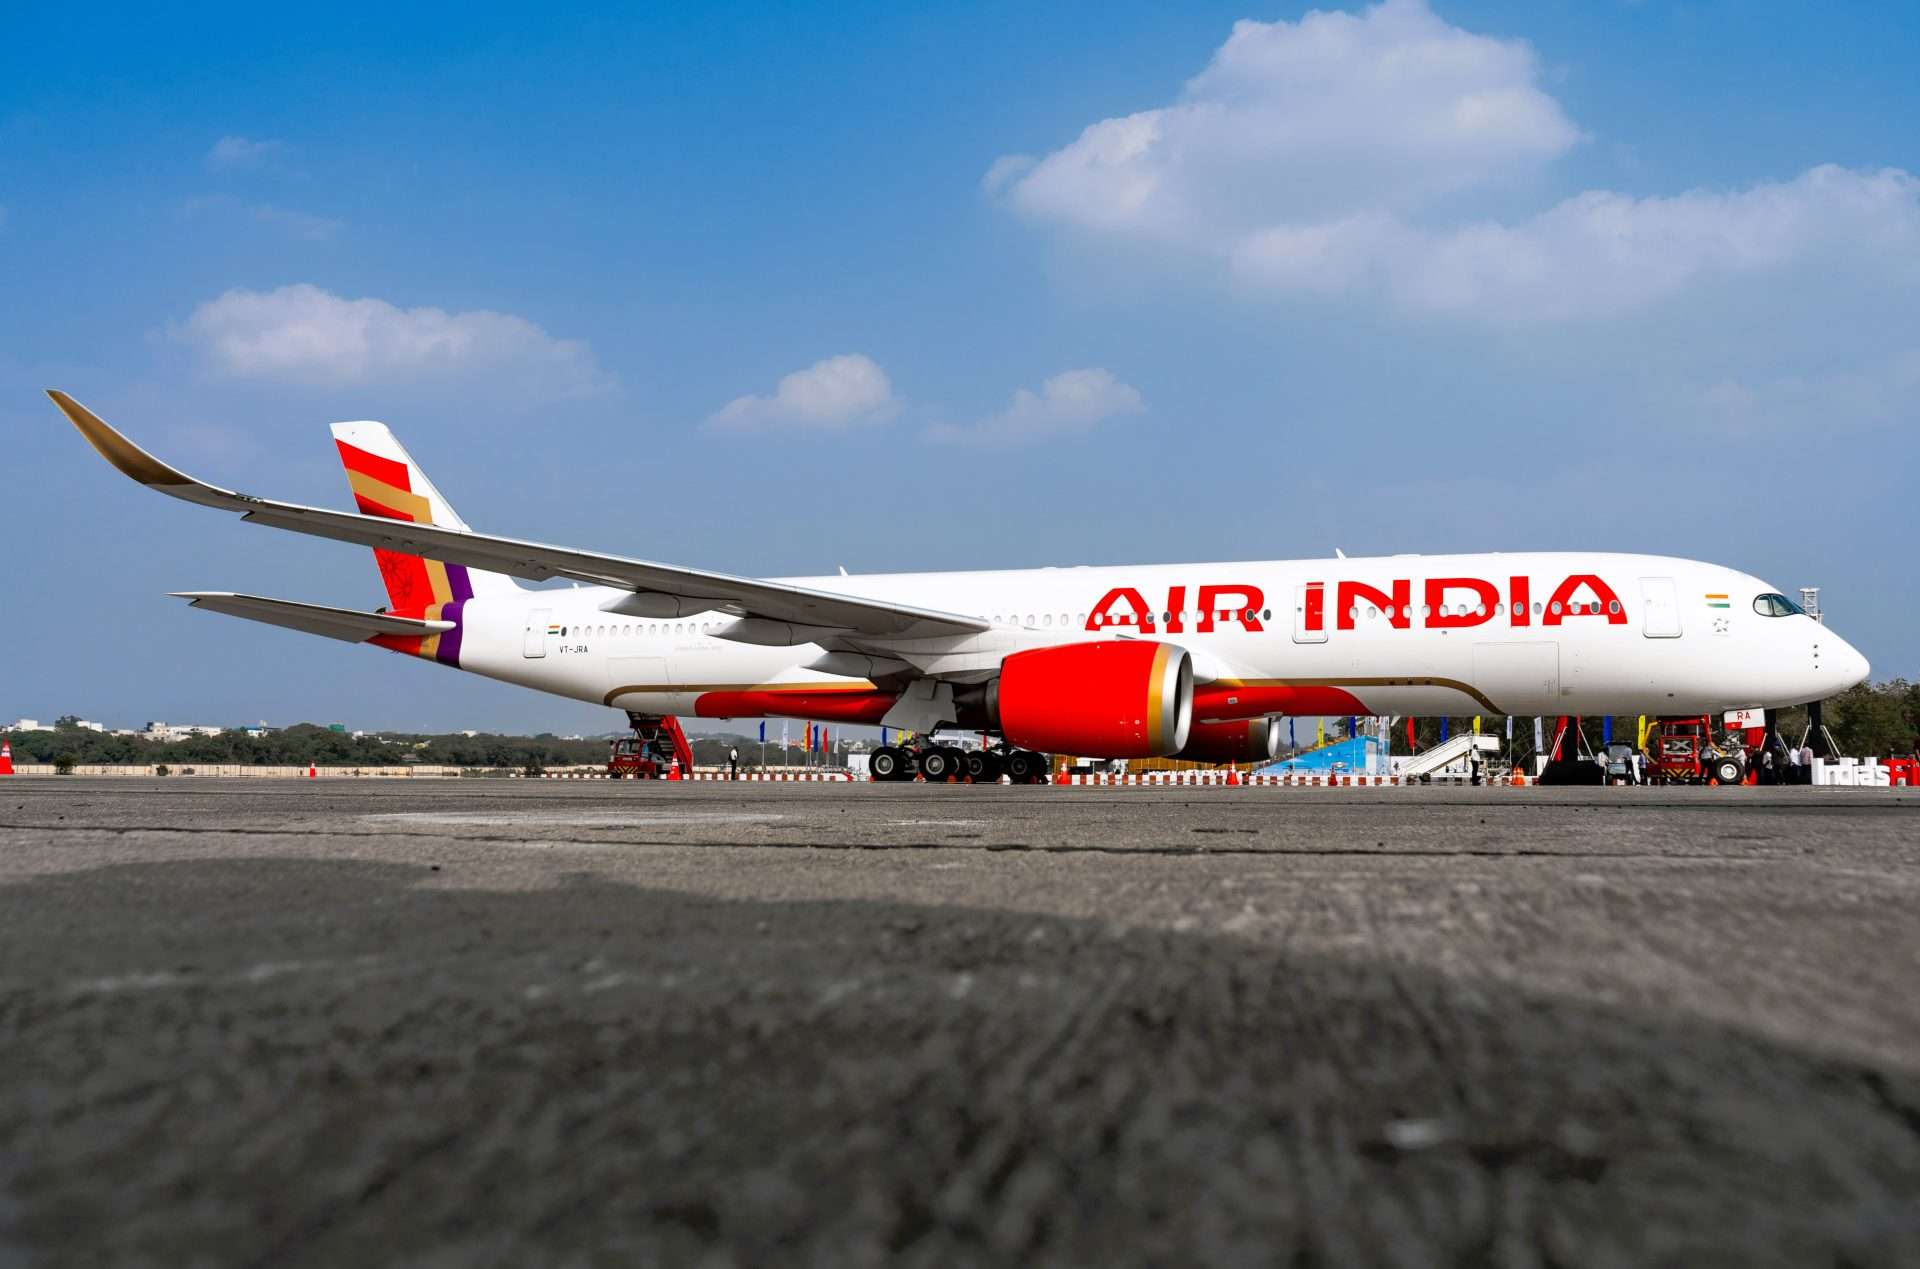 एअर इंडियाचे आयकॉनिक A350 दिल्ली-दुबई मार्गावर 1 मे पासून पदार्पण करणार